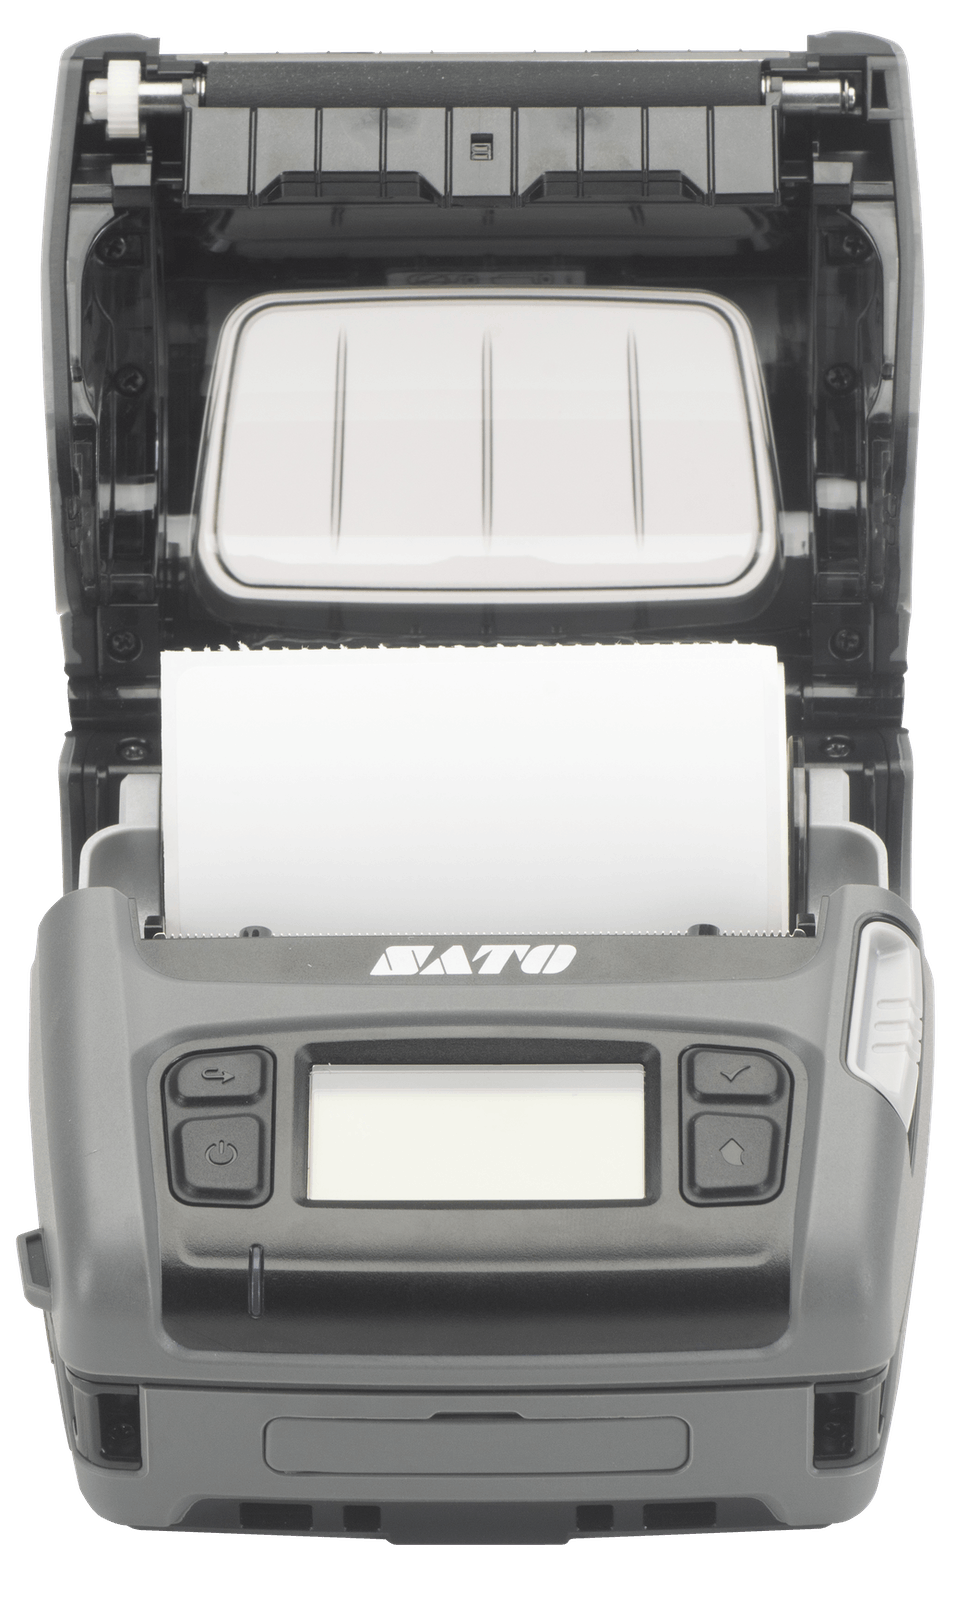 SATO PV4 | Mobile Printer | DT